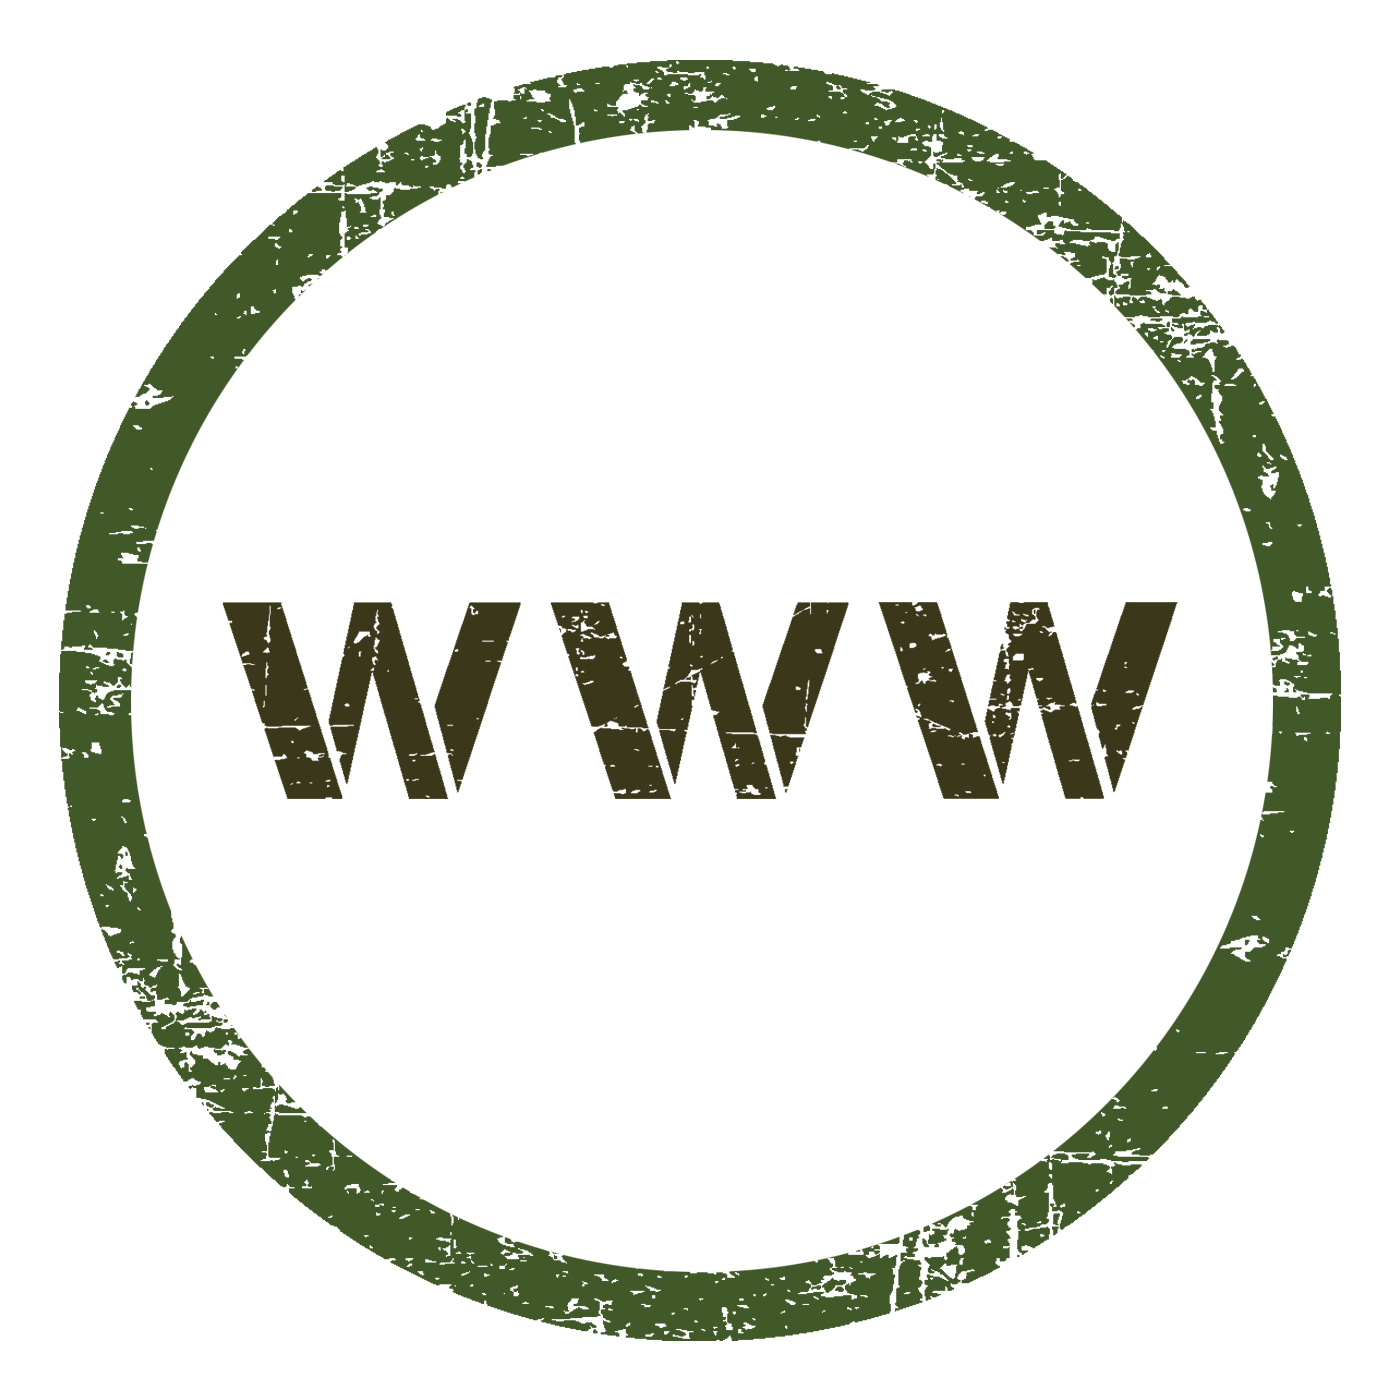 Domännamn eller www-adress för er webblösning